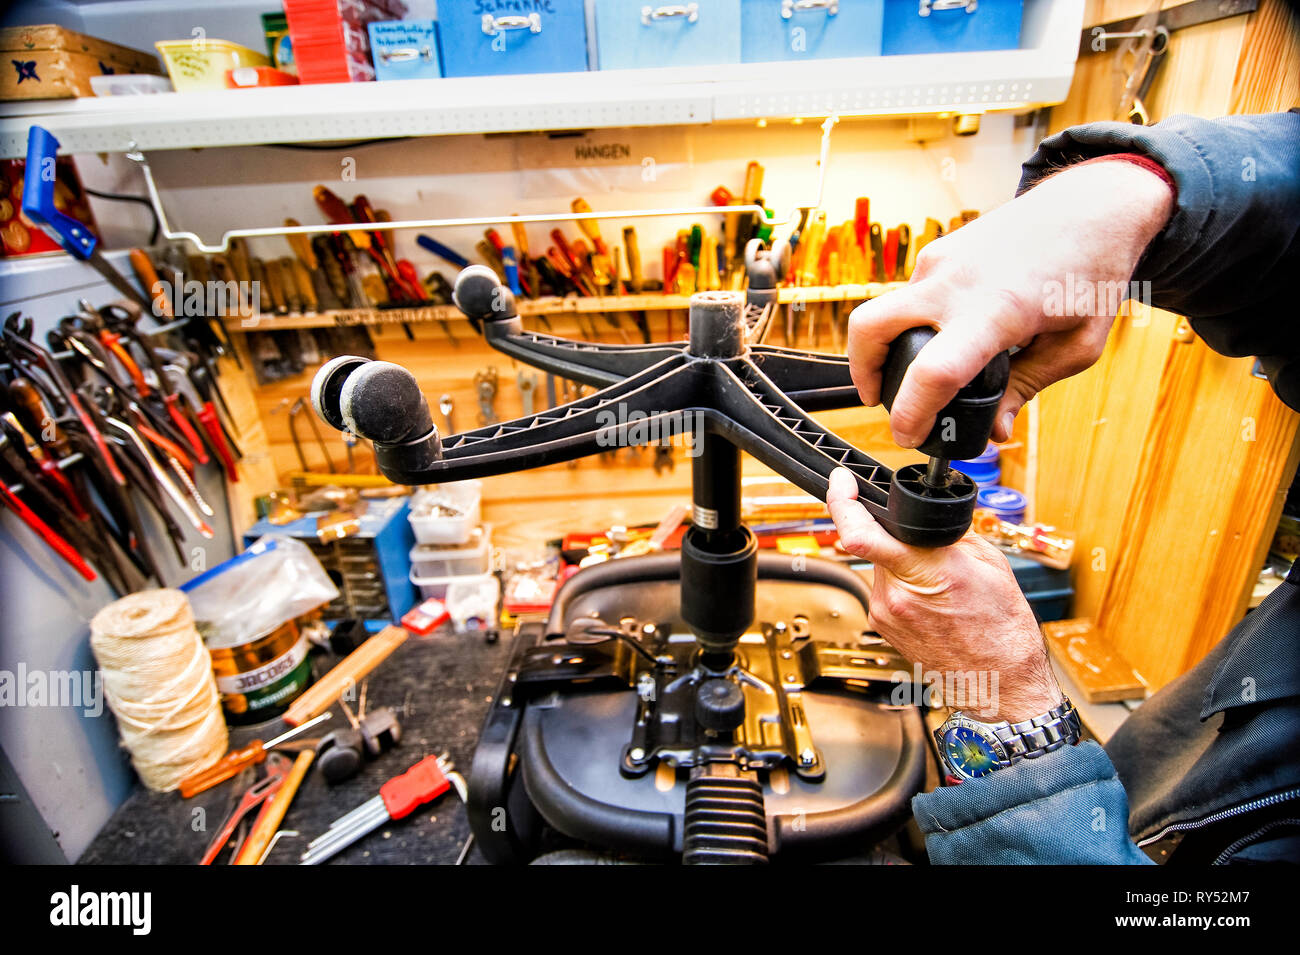 In einer Werkstatt wird das Rad an einem Buerostuhl ausgewechsetl. Im Hintergrund ist allerhand Werkzeug zu sehen. Nahaufnahme. Stock Photo